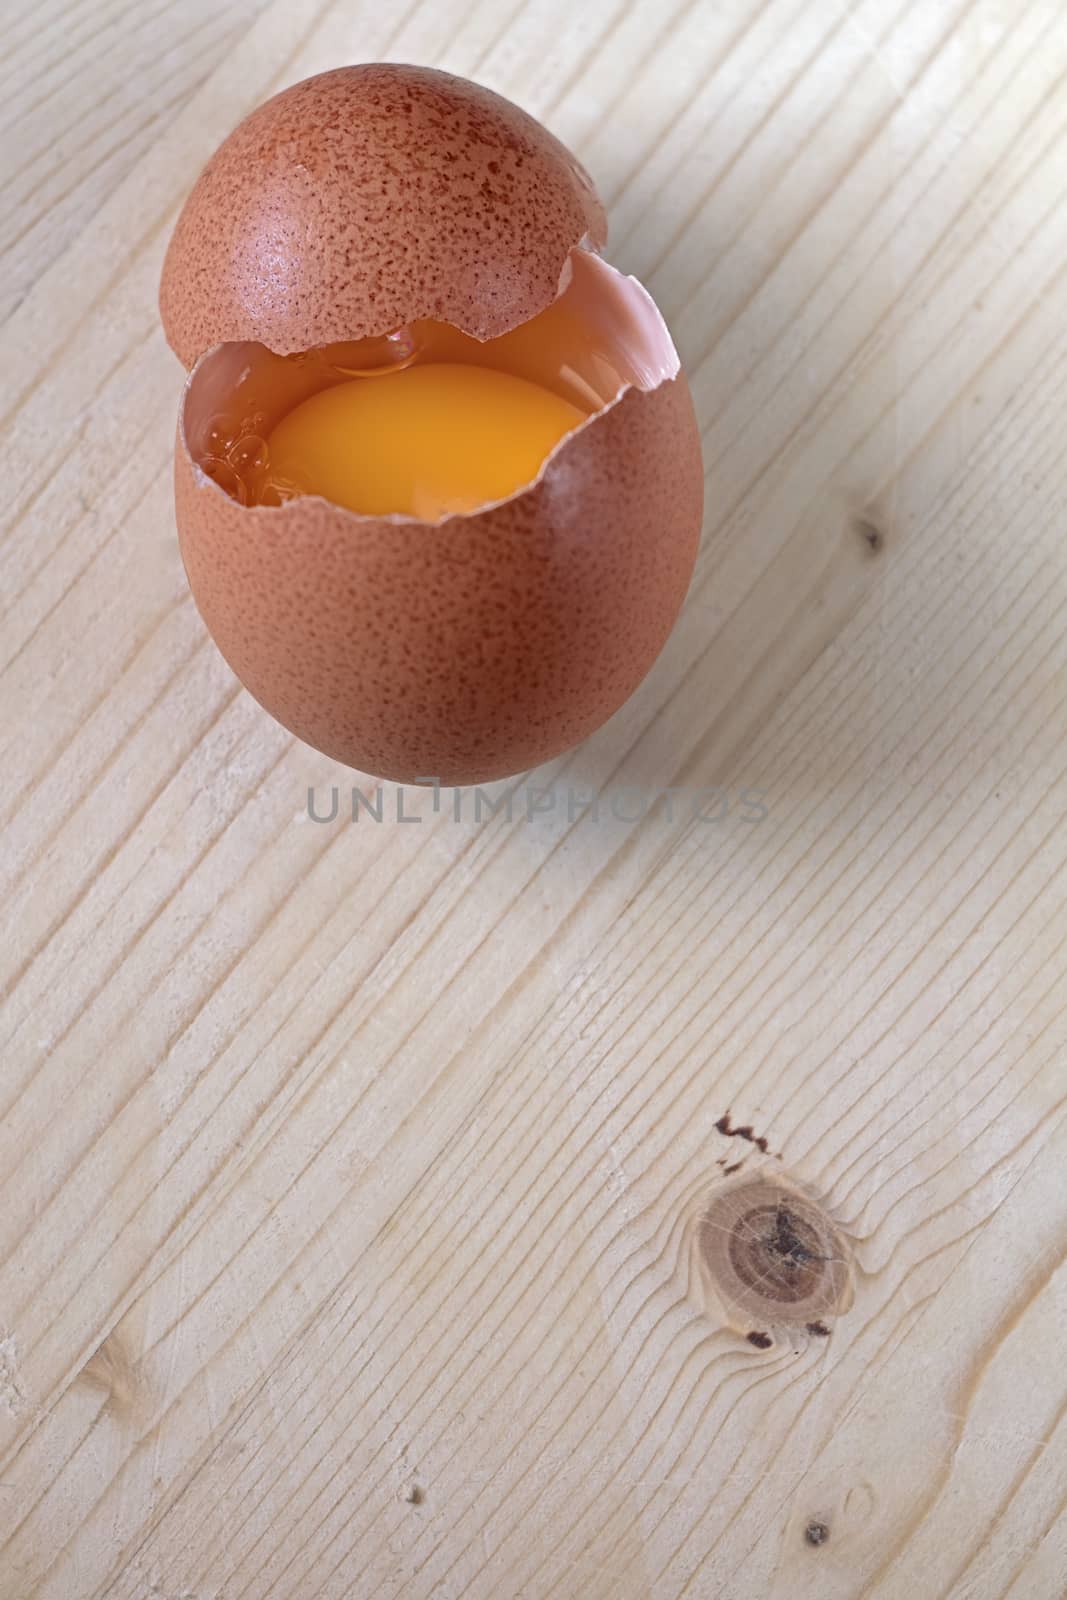 Broken egg on wooden base by EnzoArt